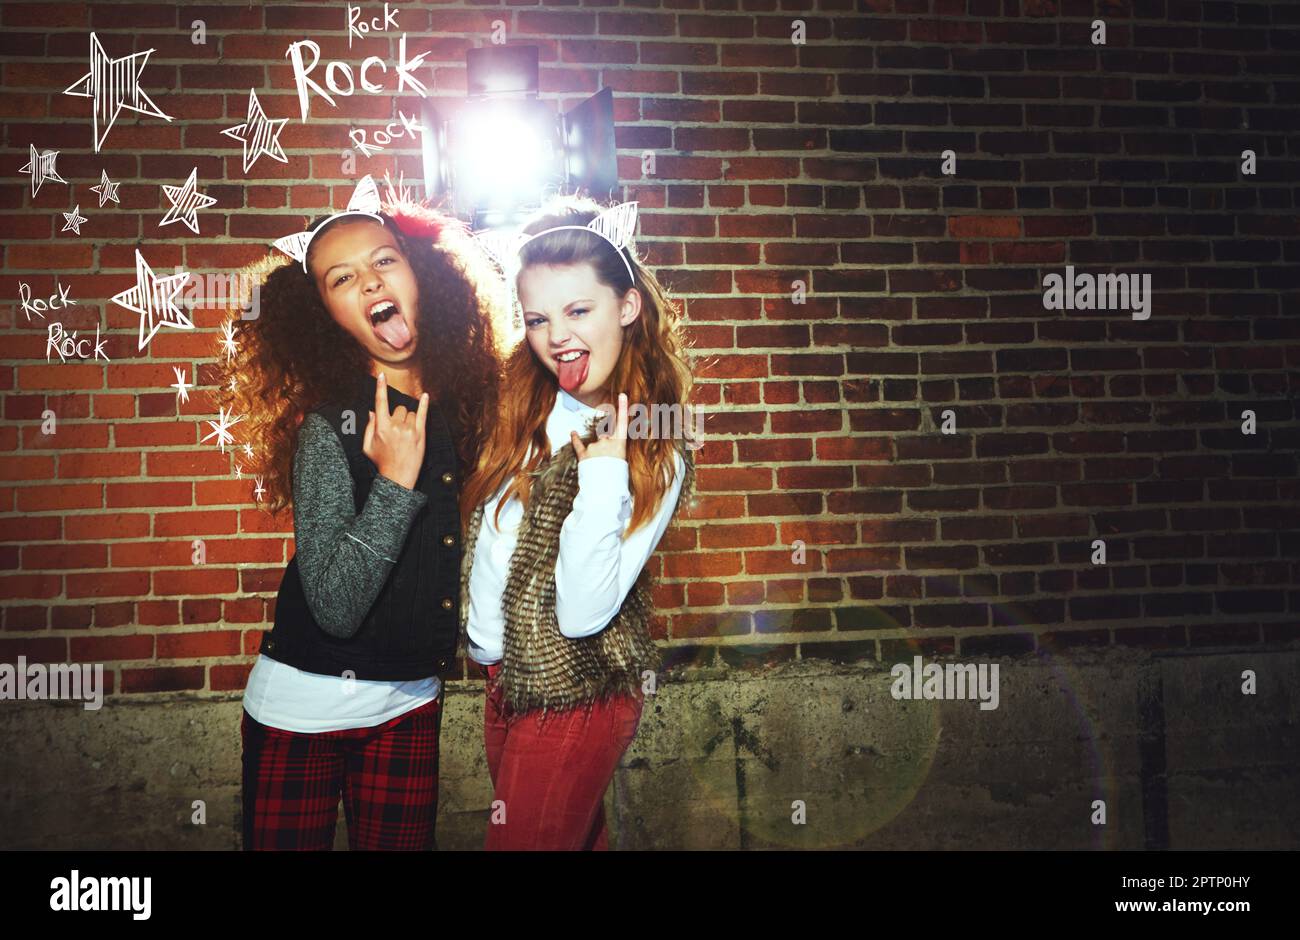 Lunga vita Rock n Roll. due ragazze che tirano i volti e fanno un gesto rock. Foto Stock